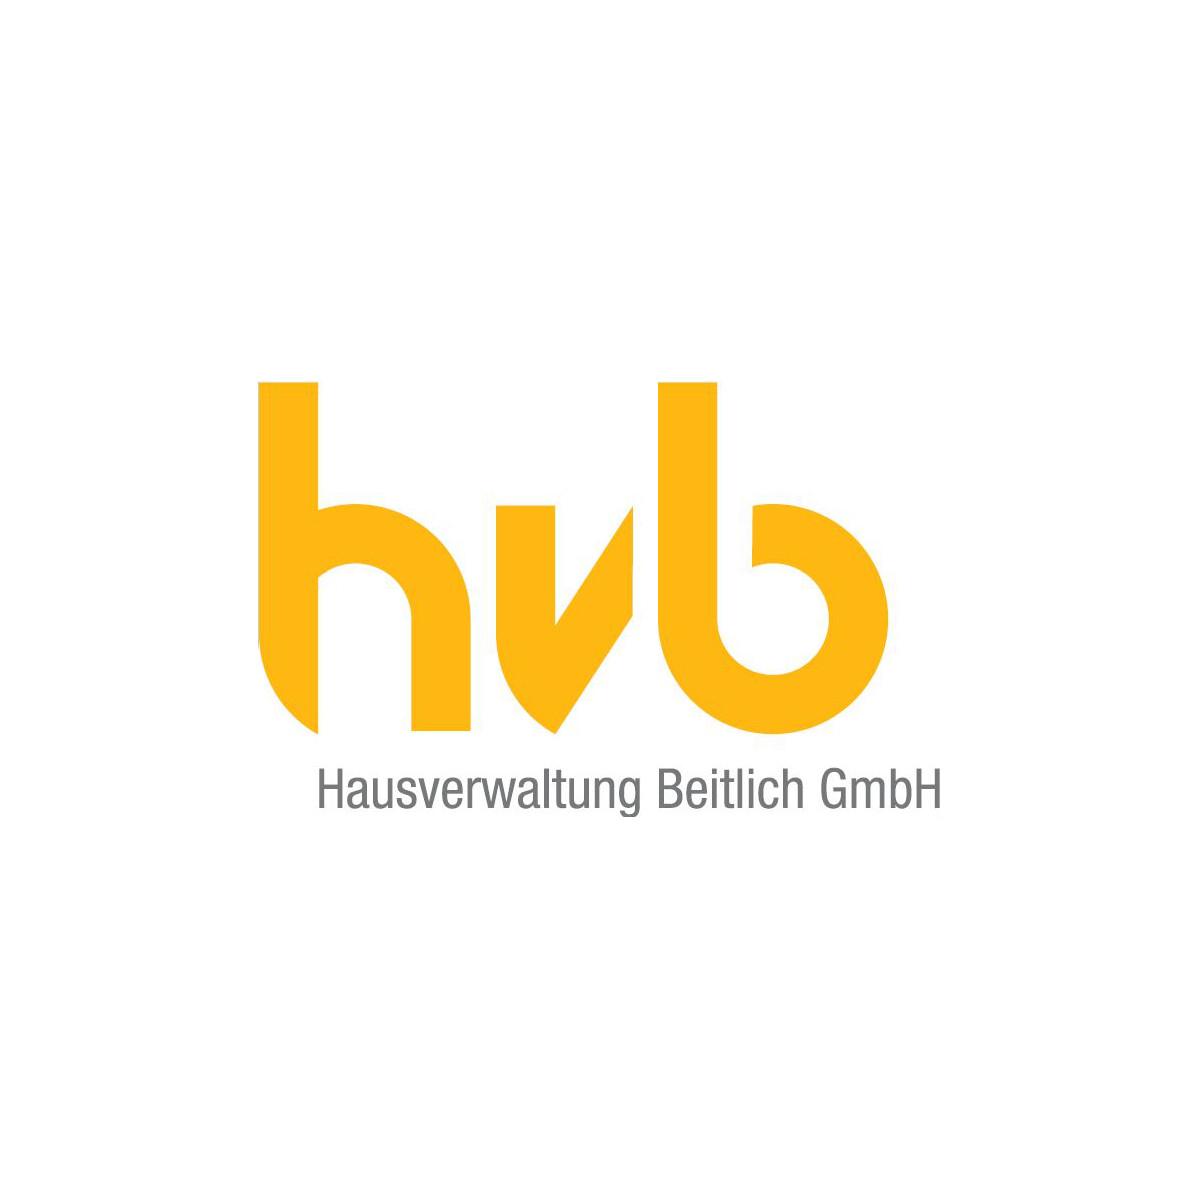 Hausverwaltung Beitlich GmbH